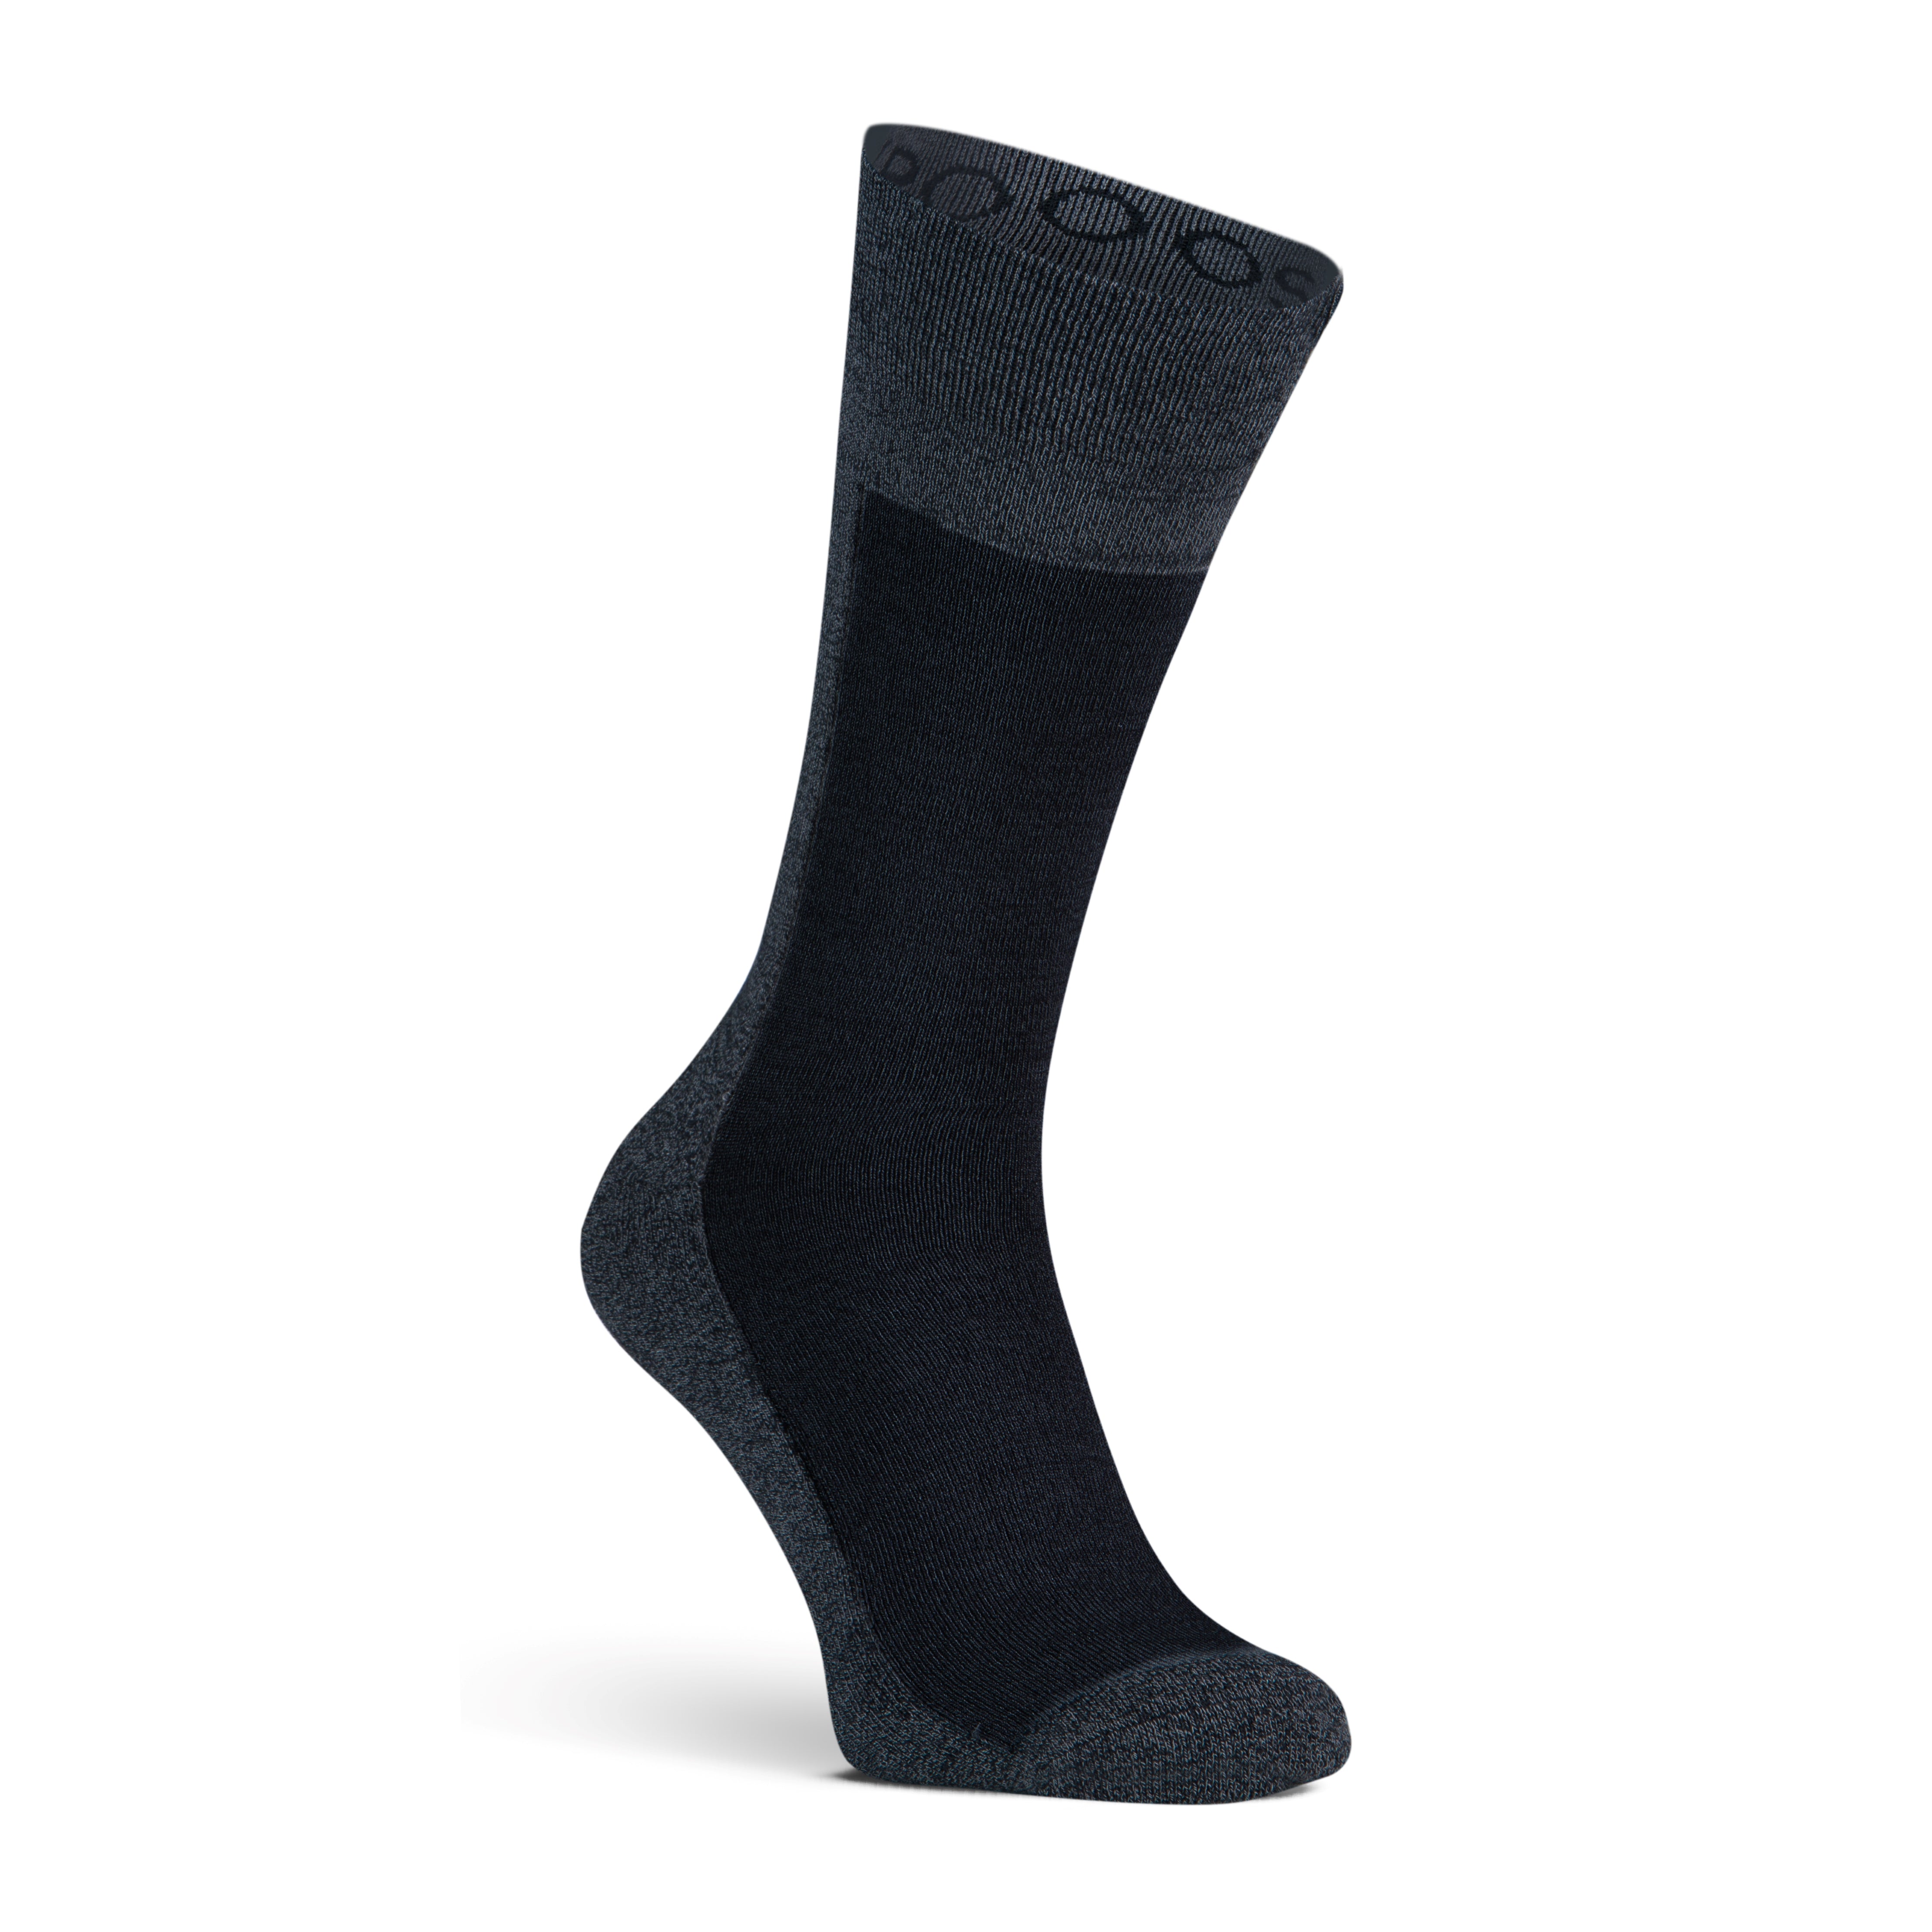 New York men's socks Black